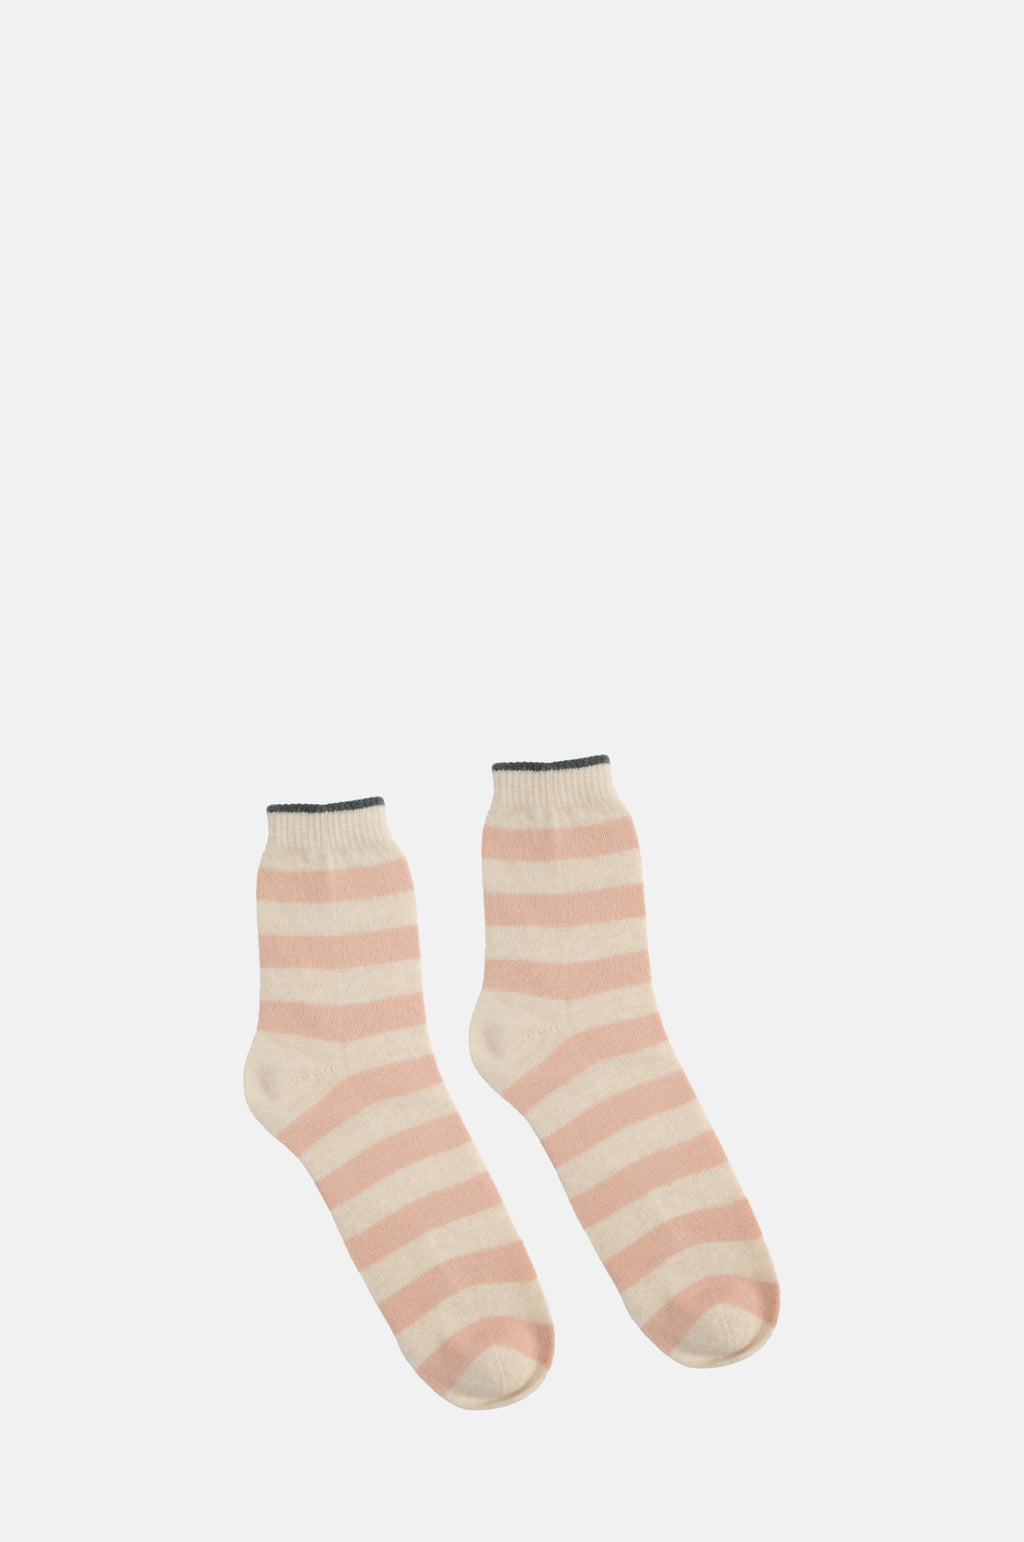 The Jumper 1234 Stripe Socks in oatmeal nude and khaki.